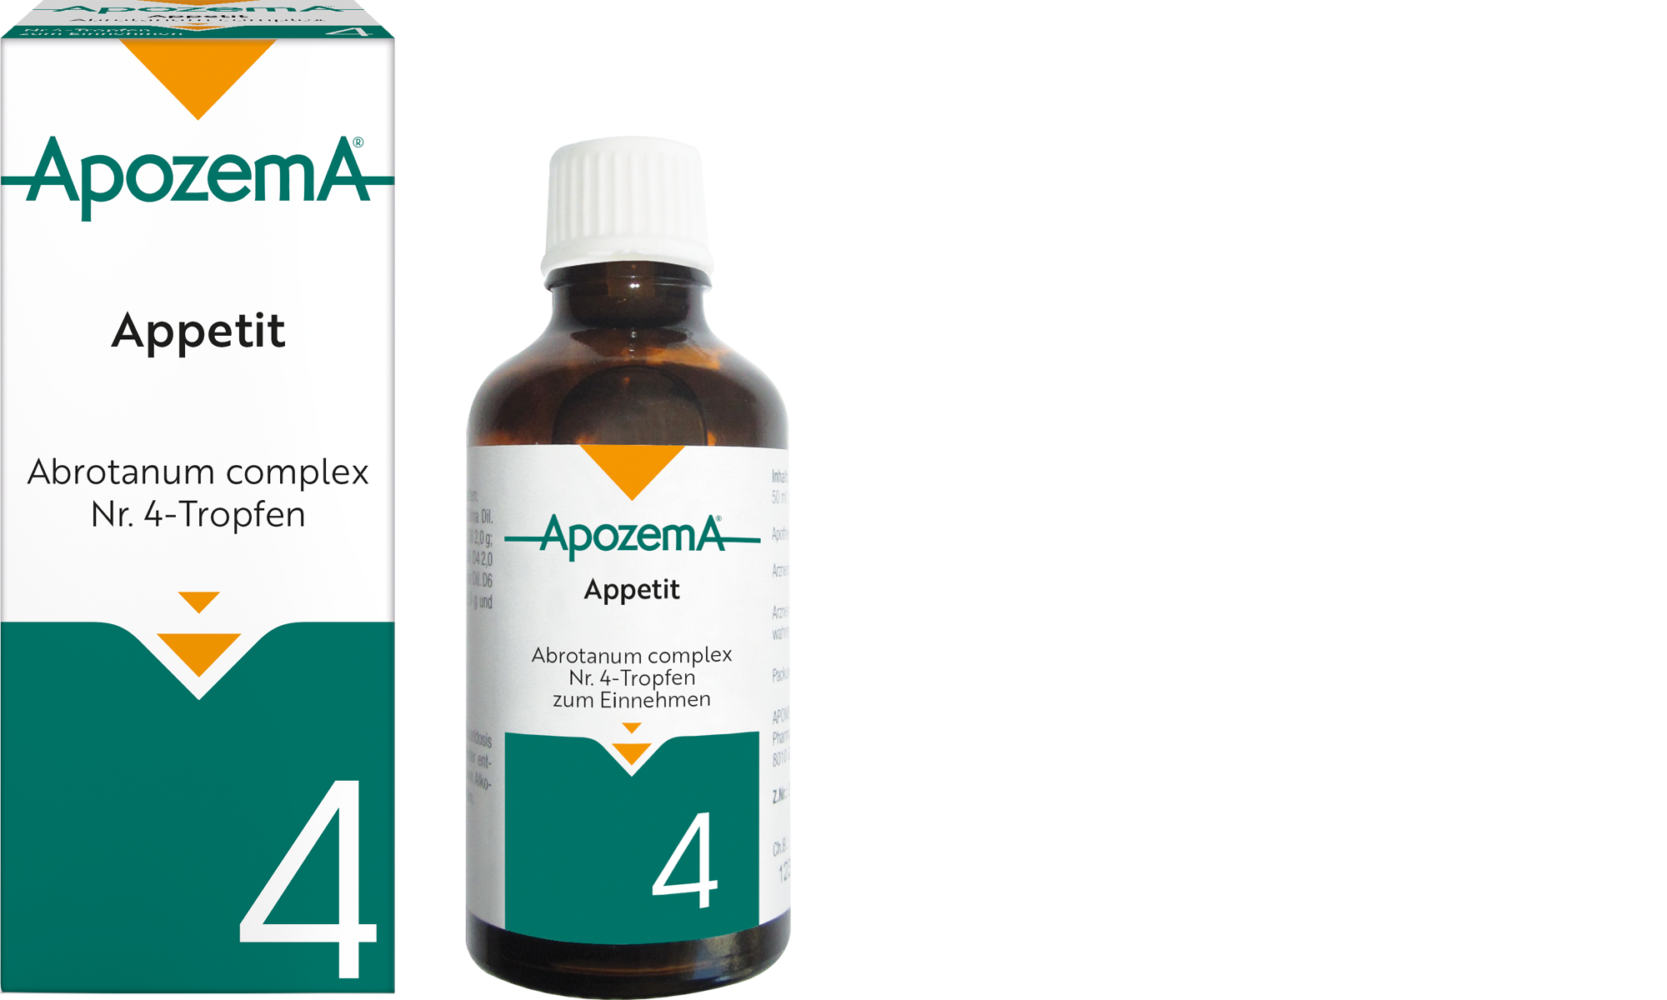 Apozema® Appetit; Abrotanum complex Nr. 4-Tropfen